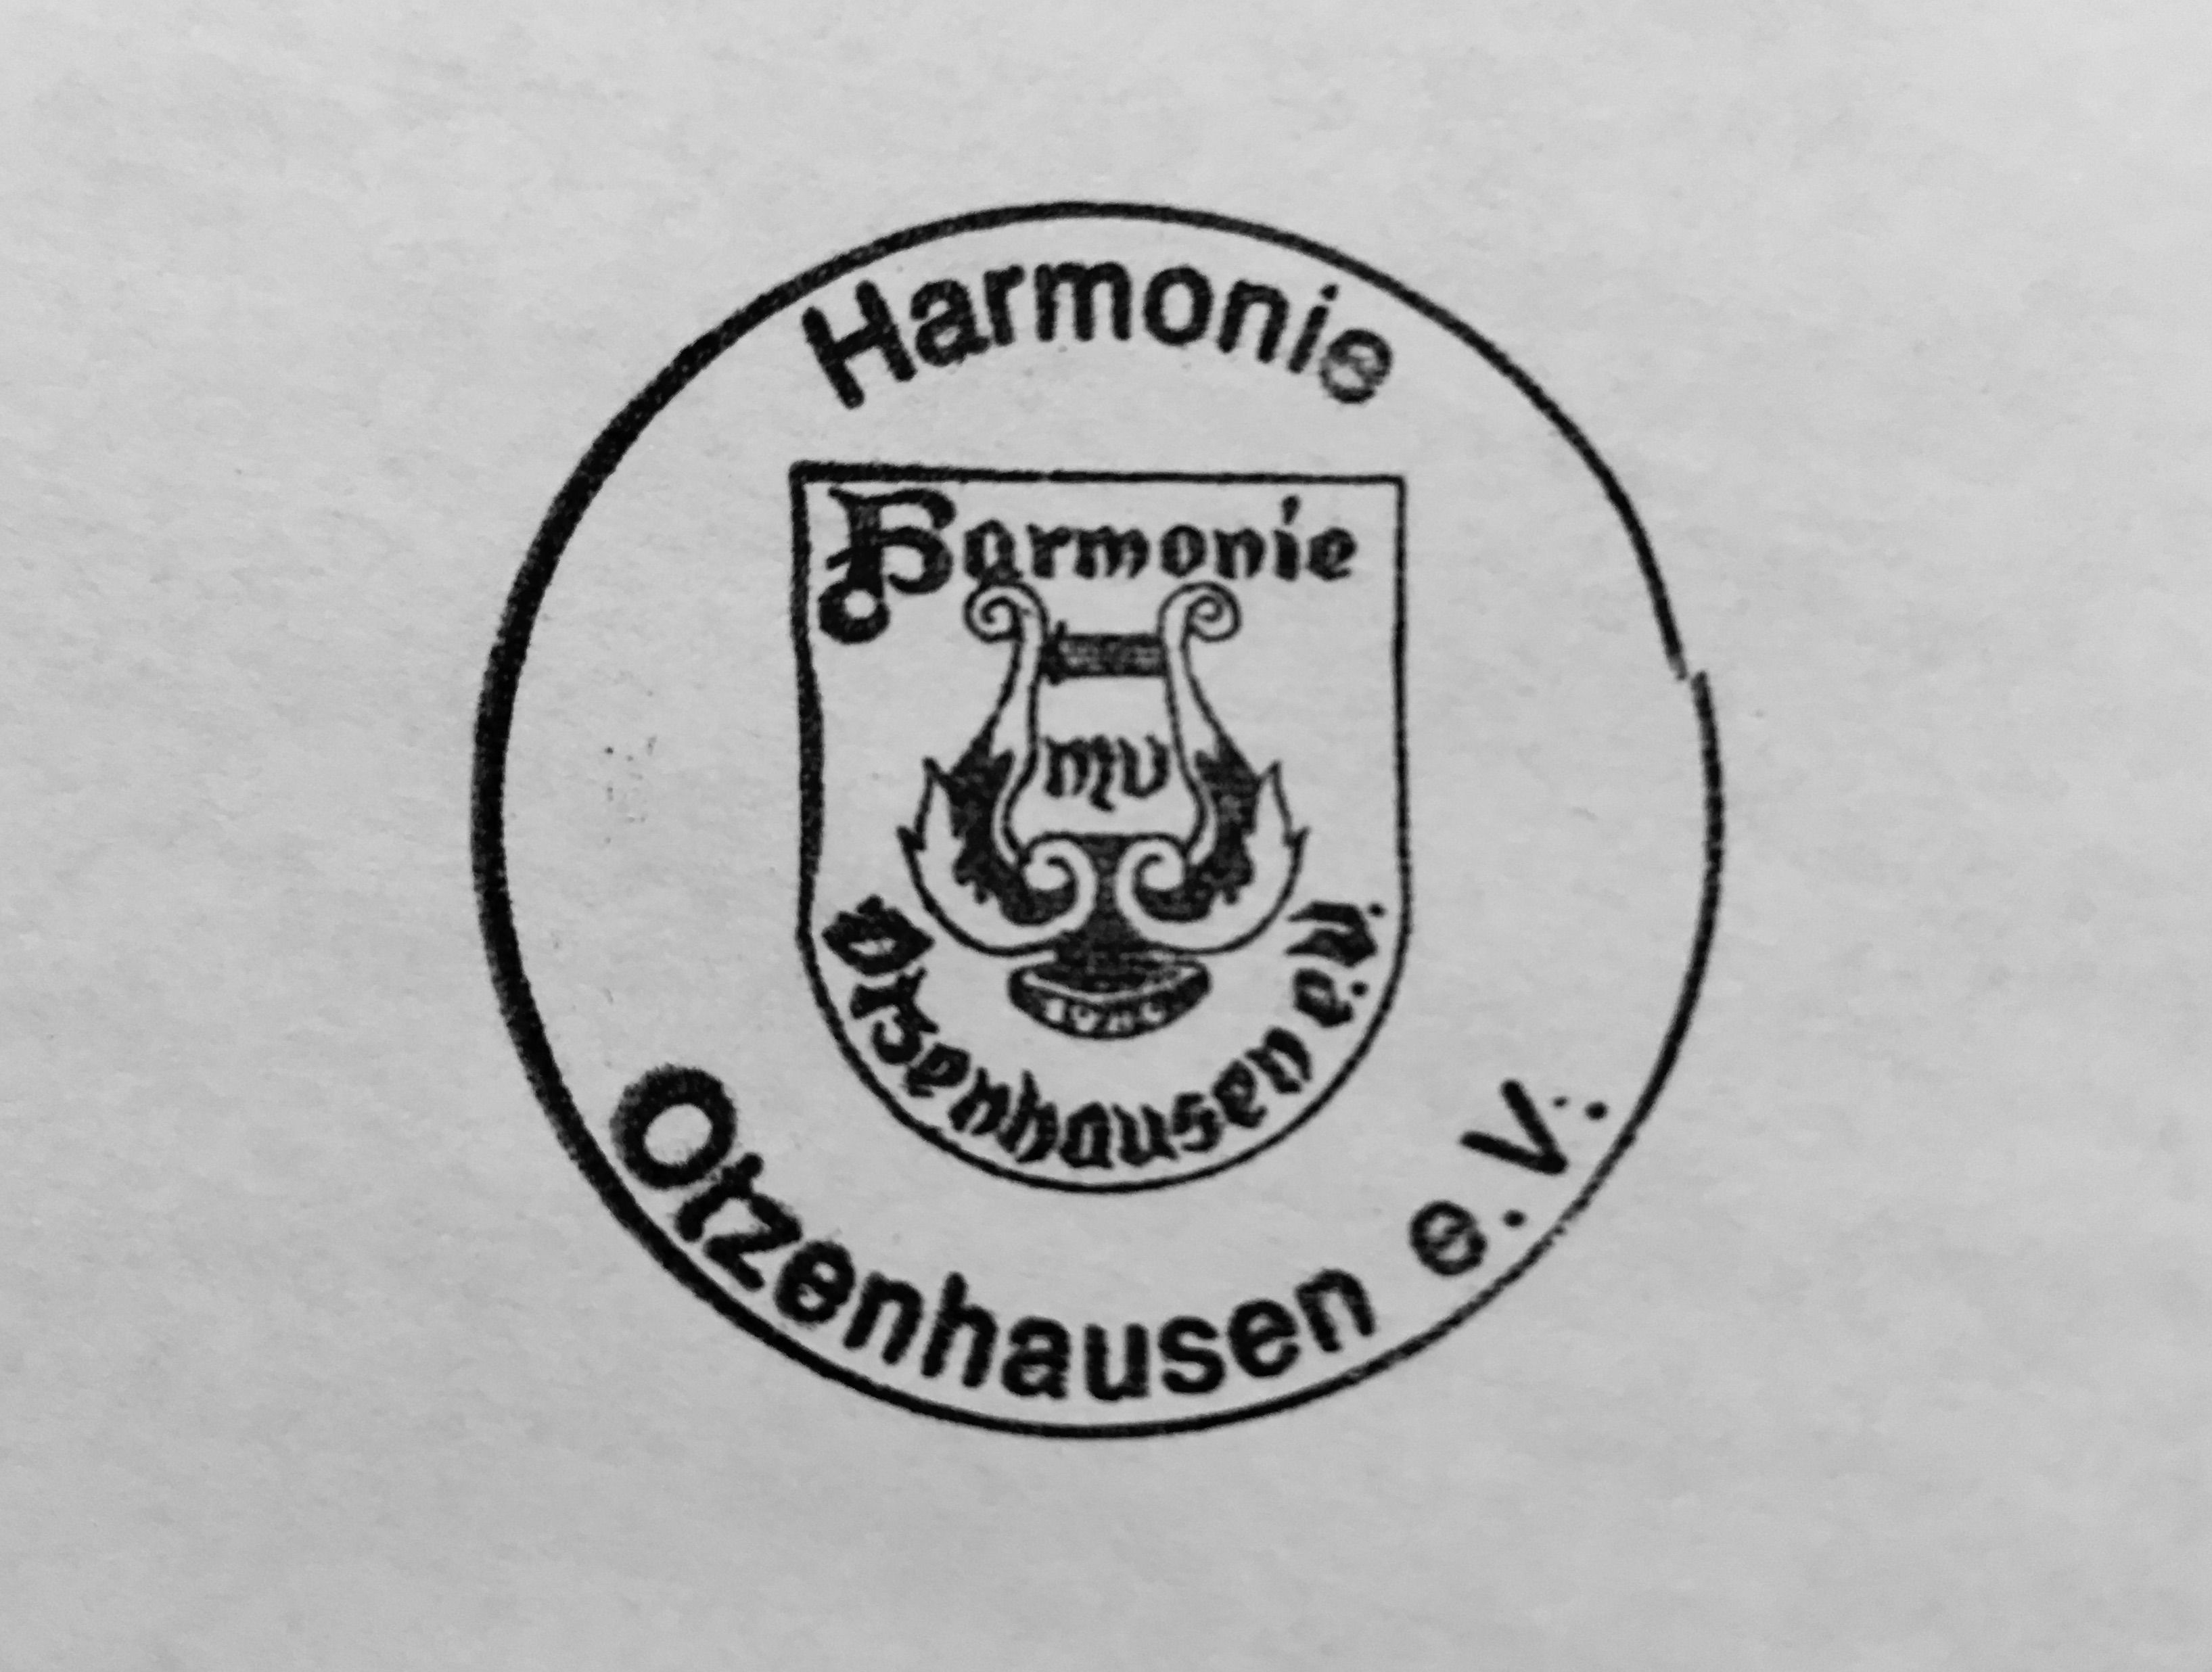 Profilbild des Vereins Musikverein Harmonie Otzenhausen e.V.